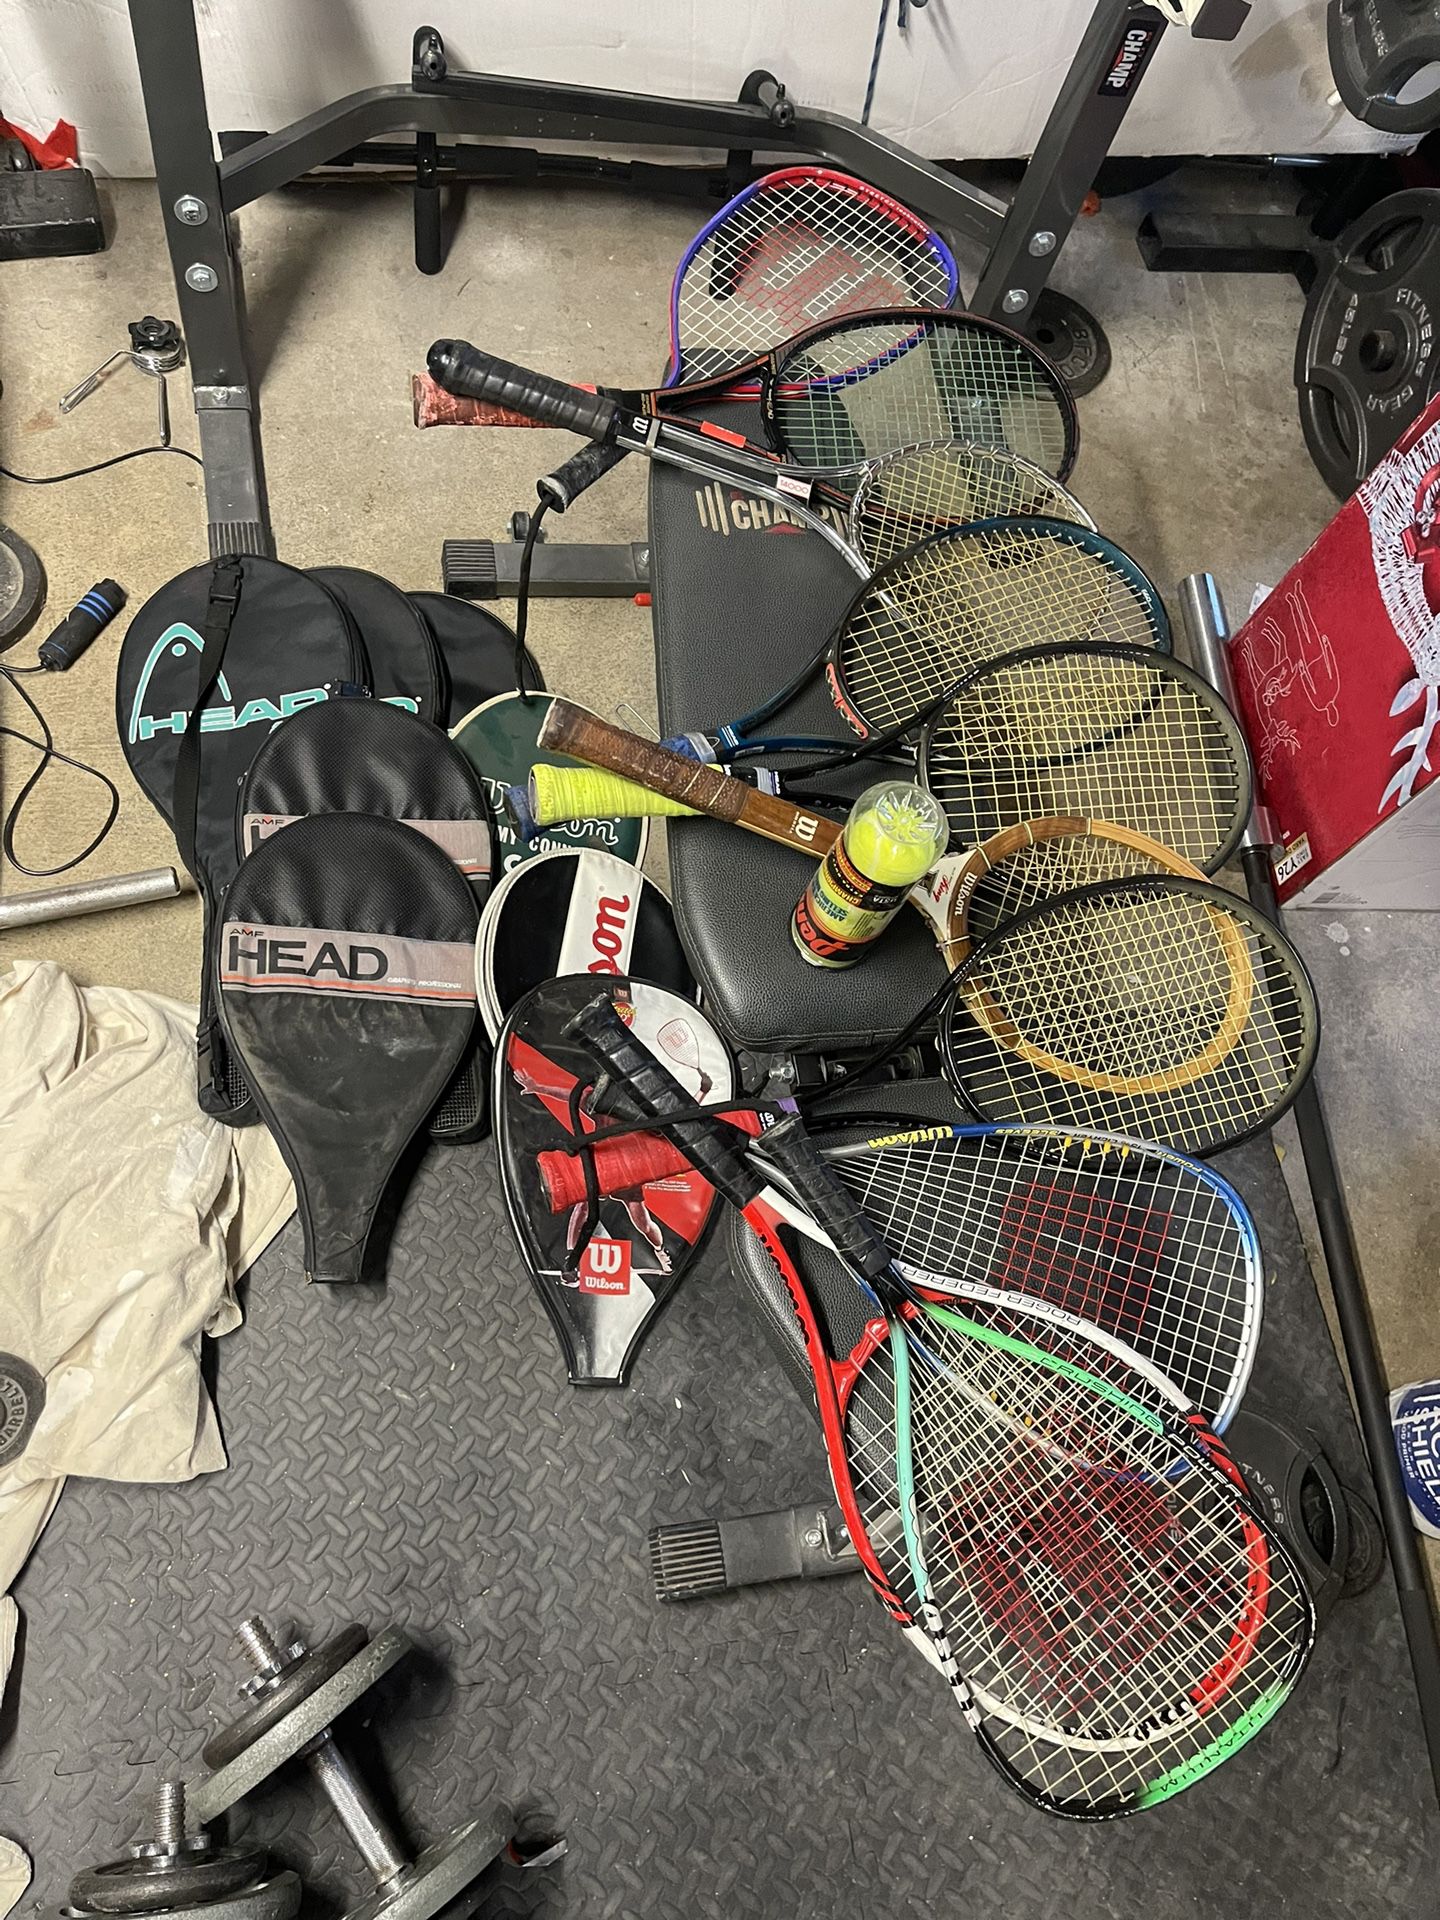 Tennis Rackets And Tennis Balls Set